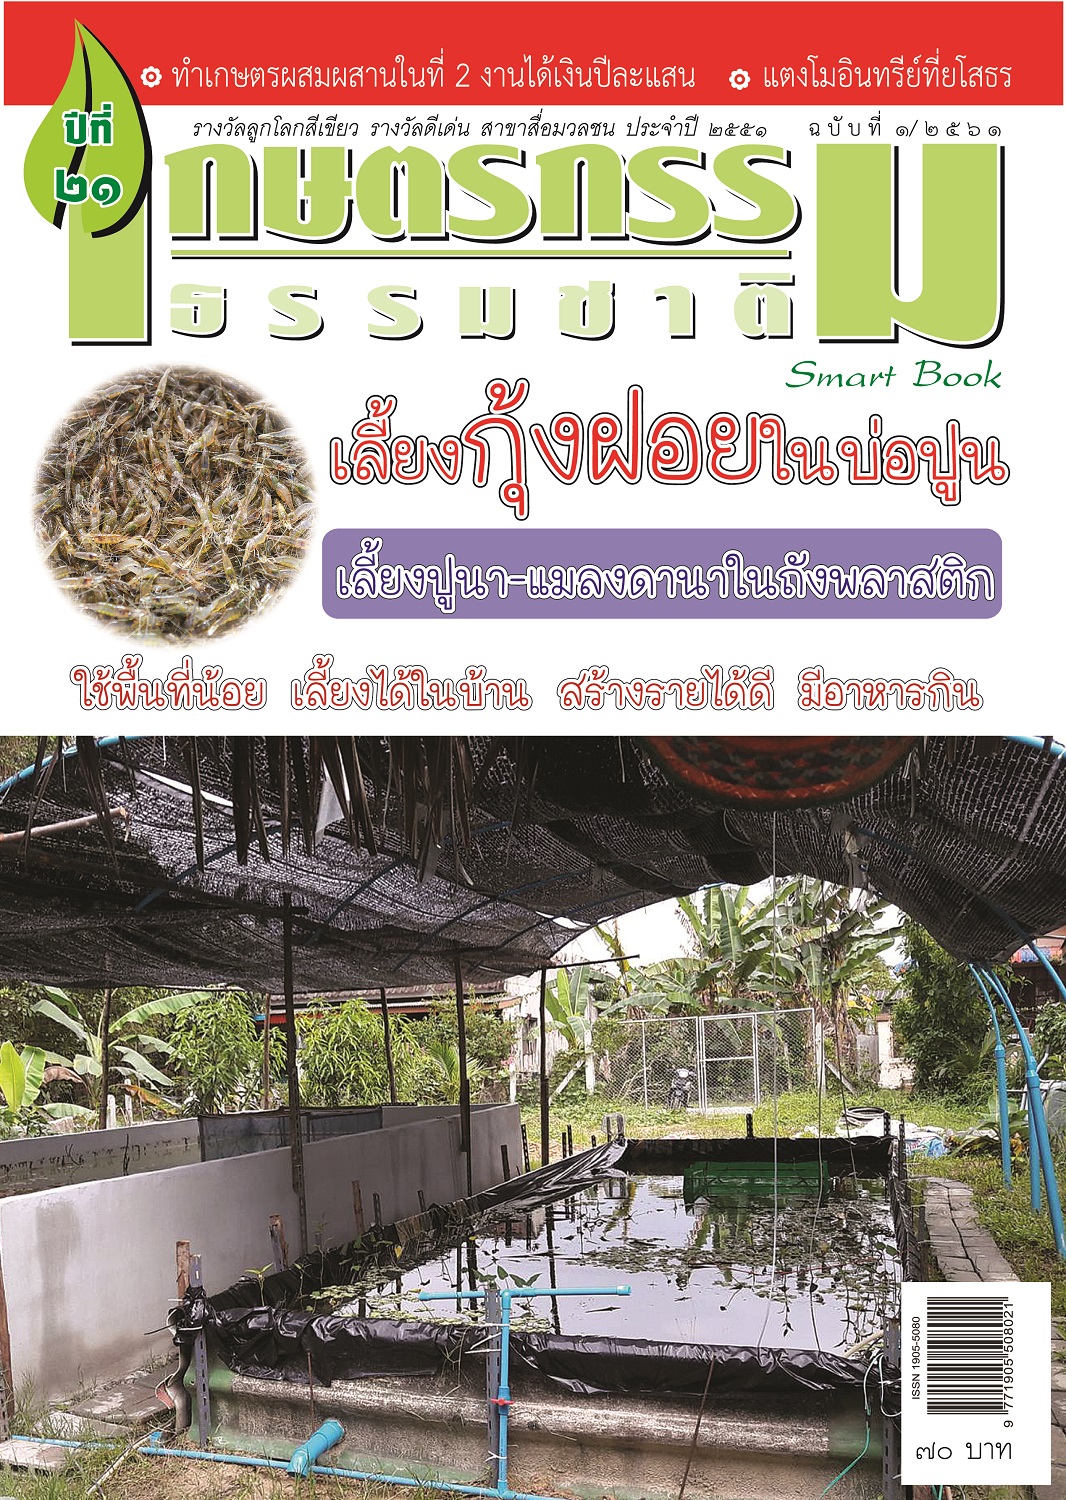 วารสารเกษตรกรรมธรรมชาติ ฉบับที่ 1/2561 เลี้ยงกุ้งฝอยในบ่อปูน เลี้ยงปูนา-แมลงดานาในถังพลาสติก